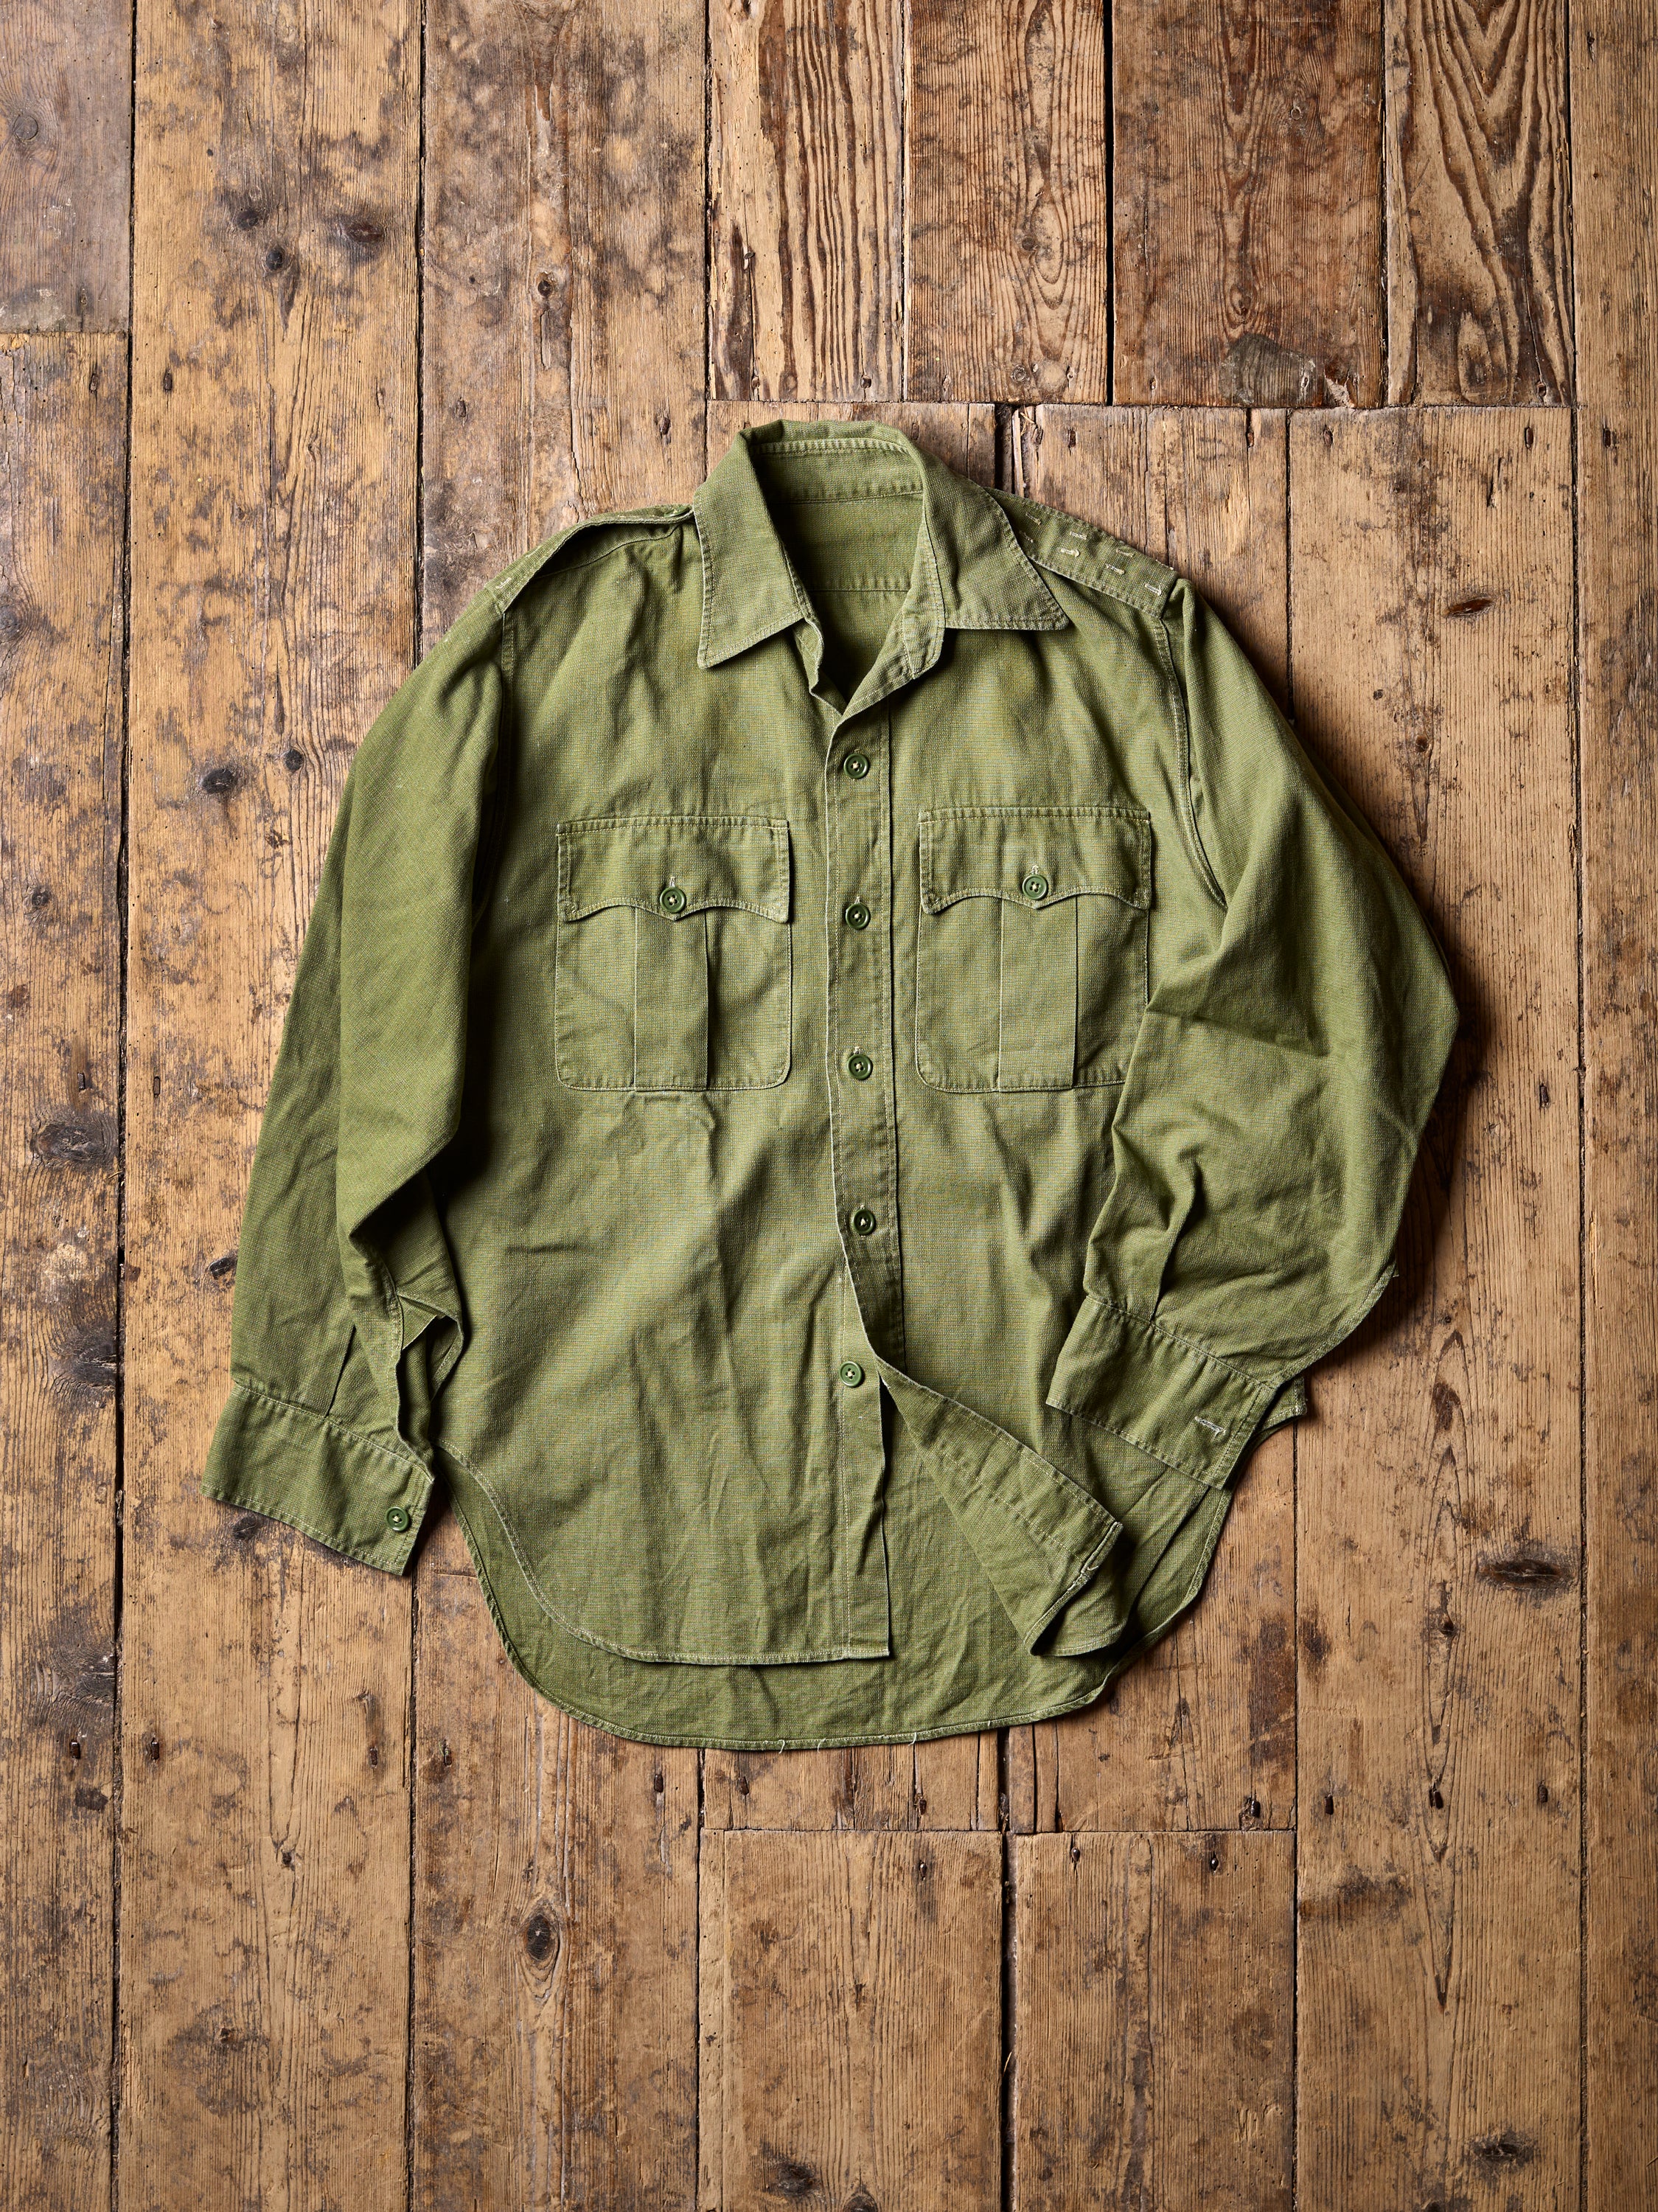 The Jungle Shirt in Original Cotton Airtex